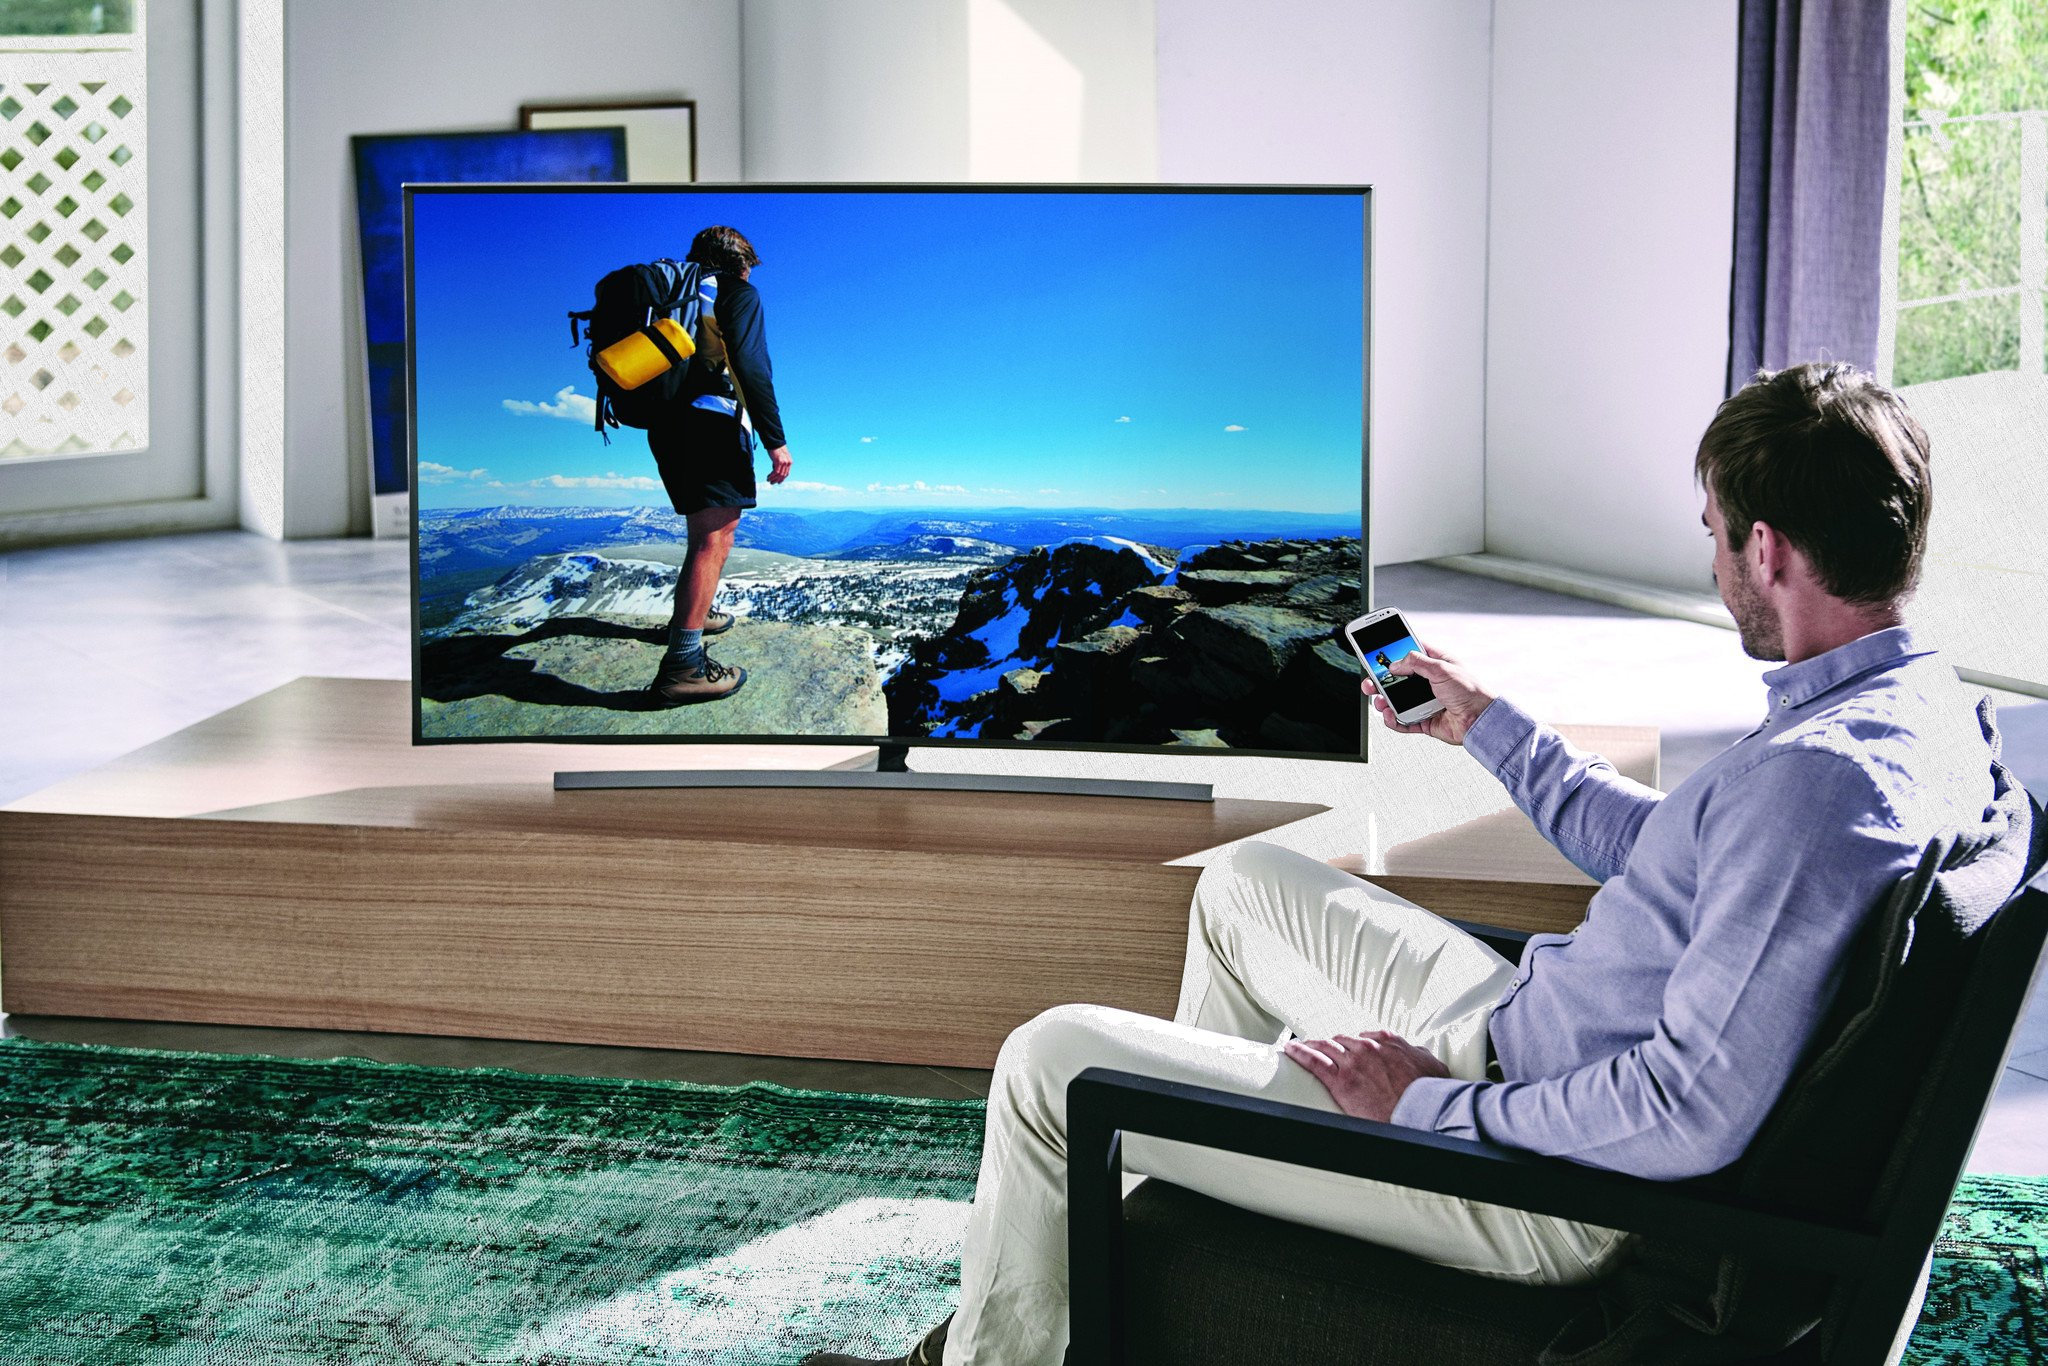 мужчина сидит перед большим плазменным телевизором - smart tv в доме как выглядит - стерео система фото